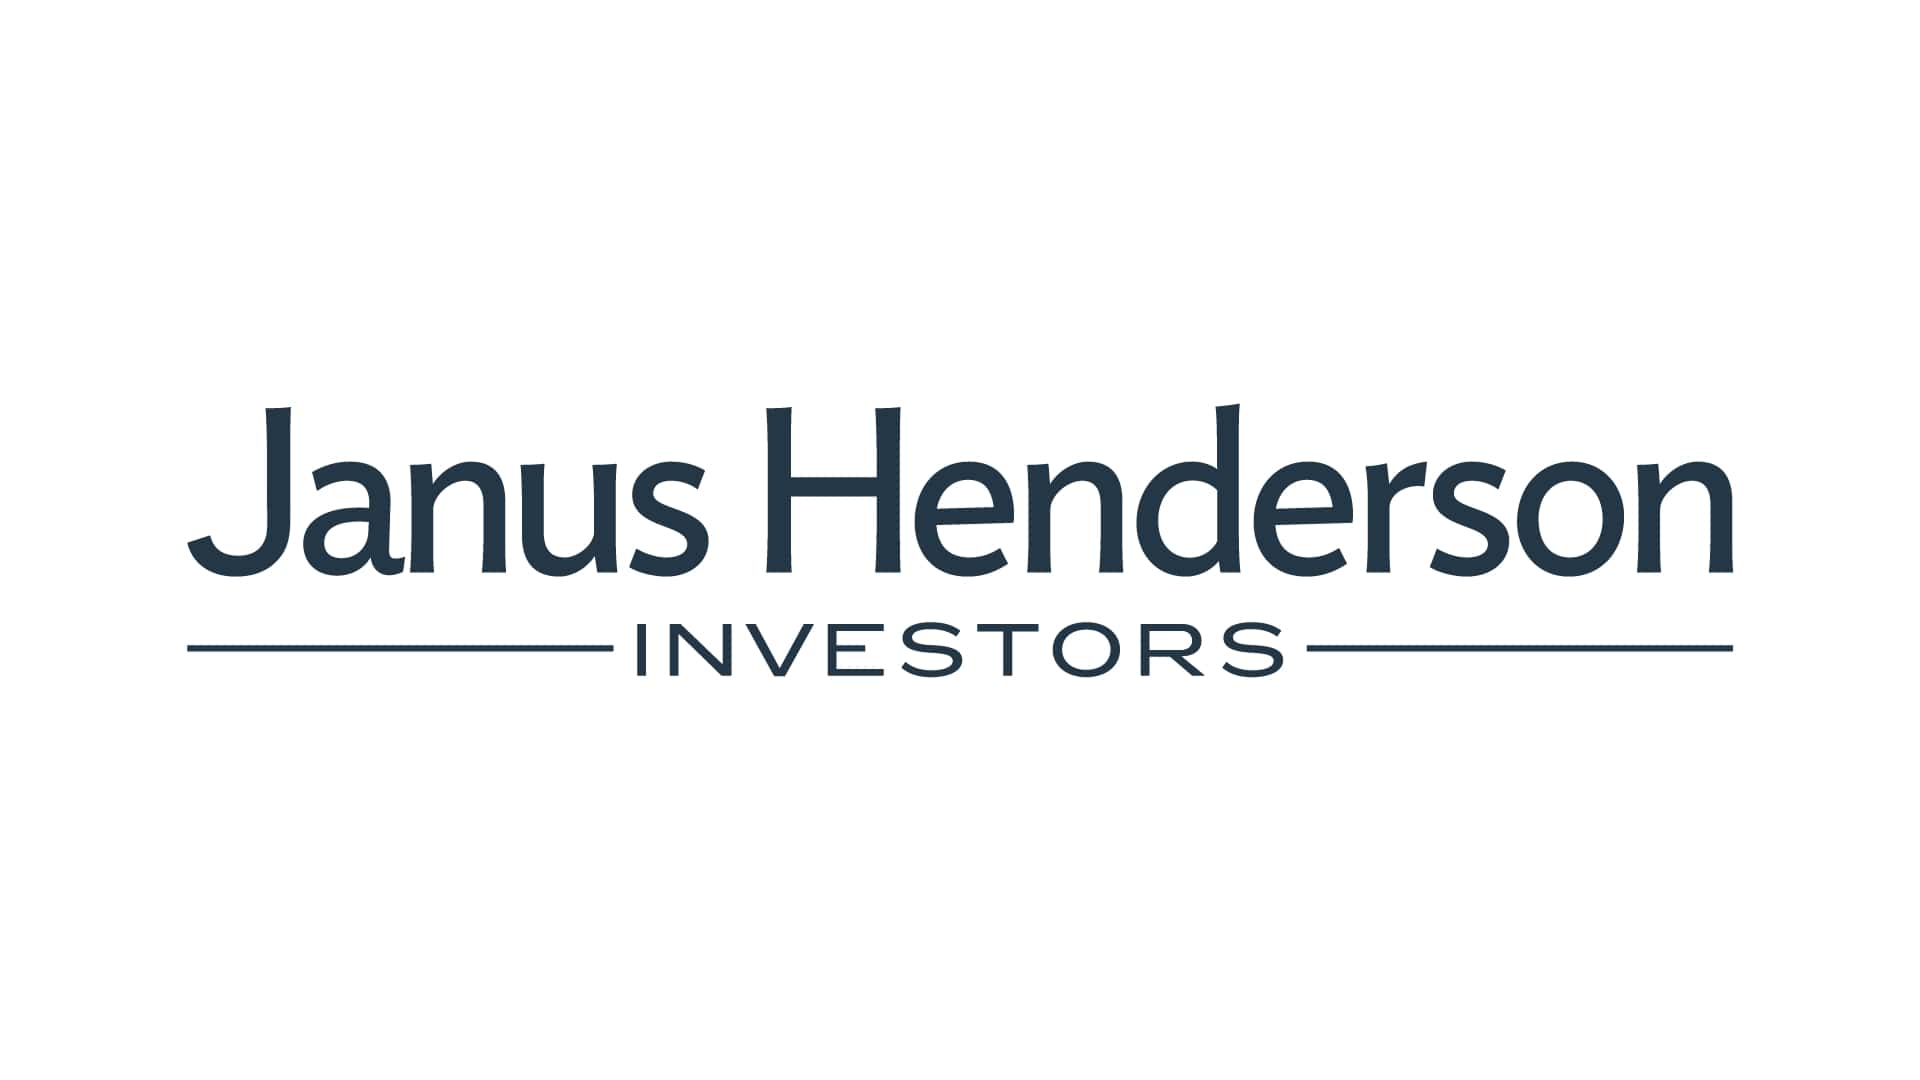 Tabula och Janus Henderson Group plc (NYSE: JHG) meddelade i förra veckan att de har ingått ett avtal enligt vilket Janus Henderson kommer att förvärva den europeiska ETF-leverantören Tabula Investment Management.